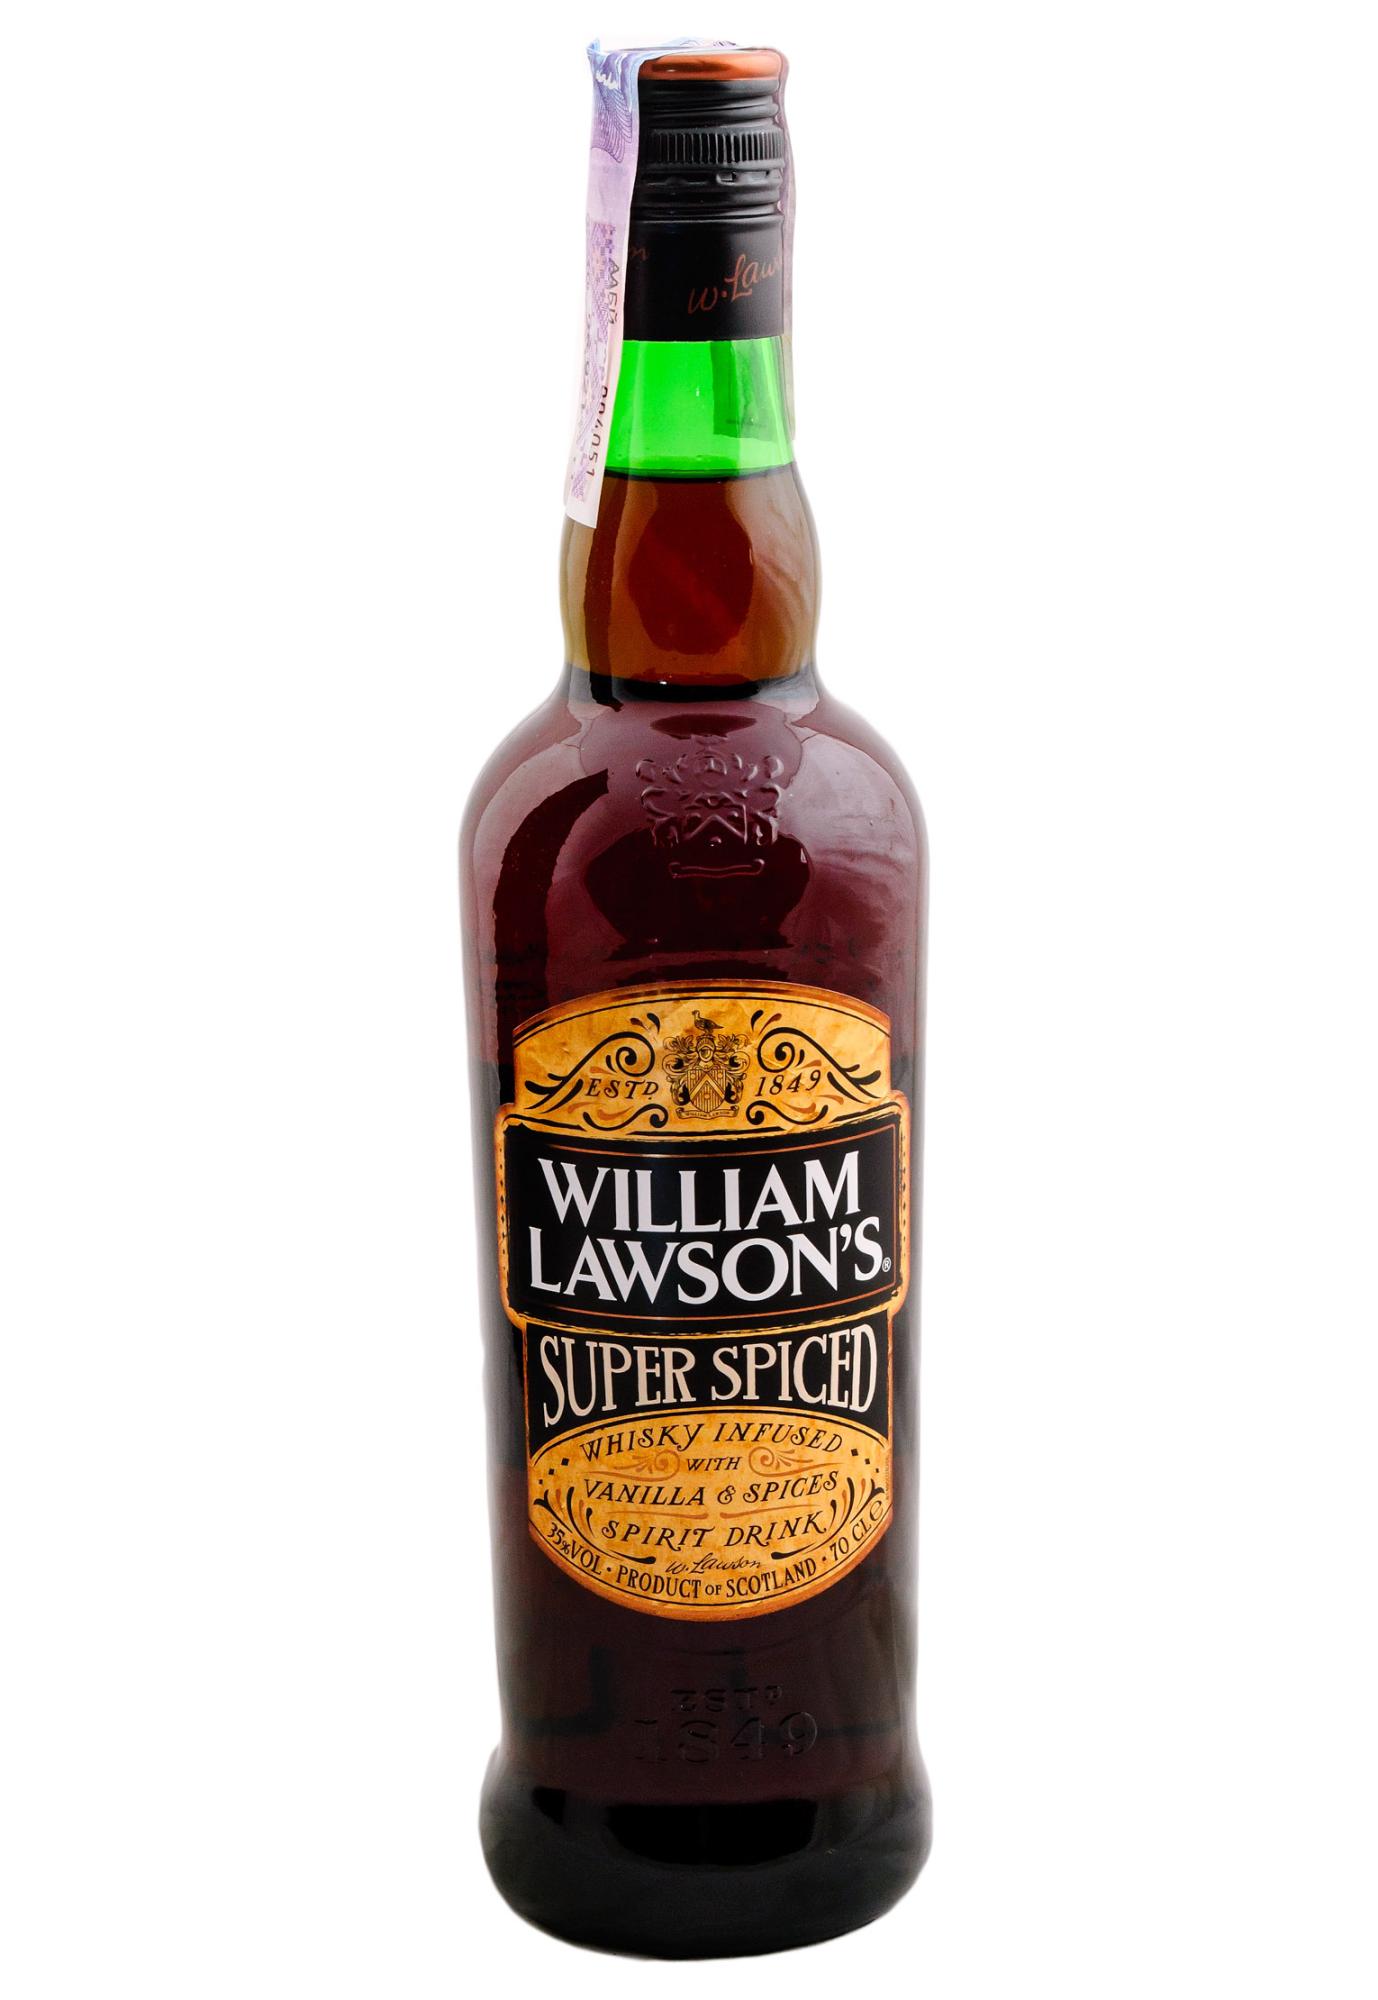 Лоусон 0.7 цена. William Lawson's 0.7 super Spiced виски. William Lawson's super Spiced 0.7 л. Виски William Lawson's Spiced. Виски Вильям Лоусон Спайсед 0.7.